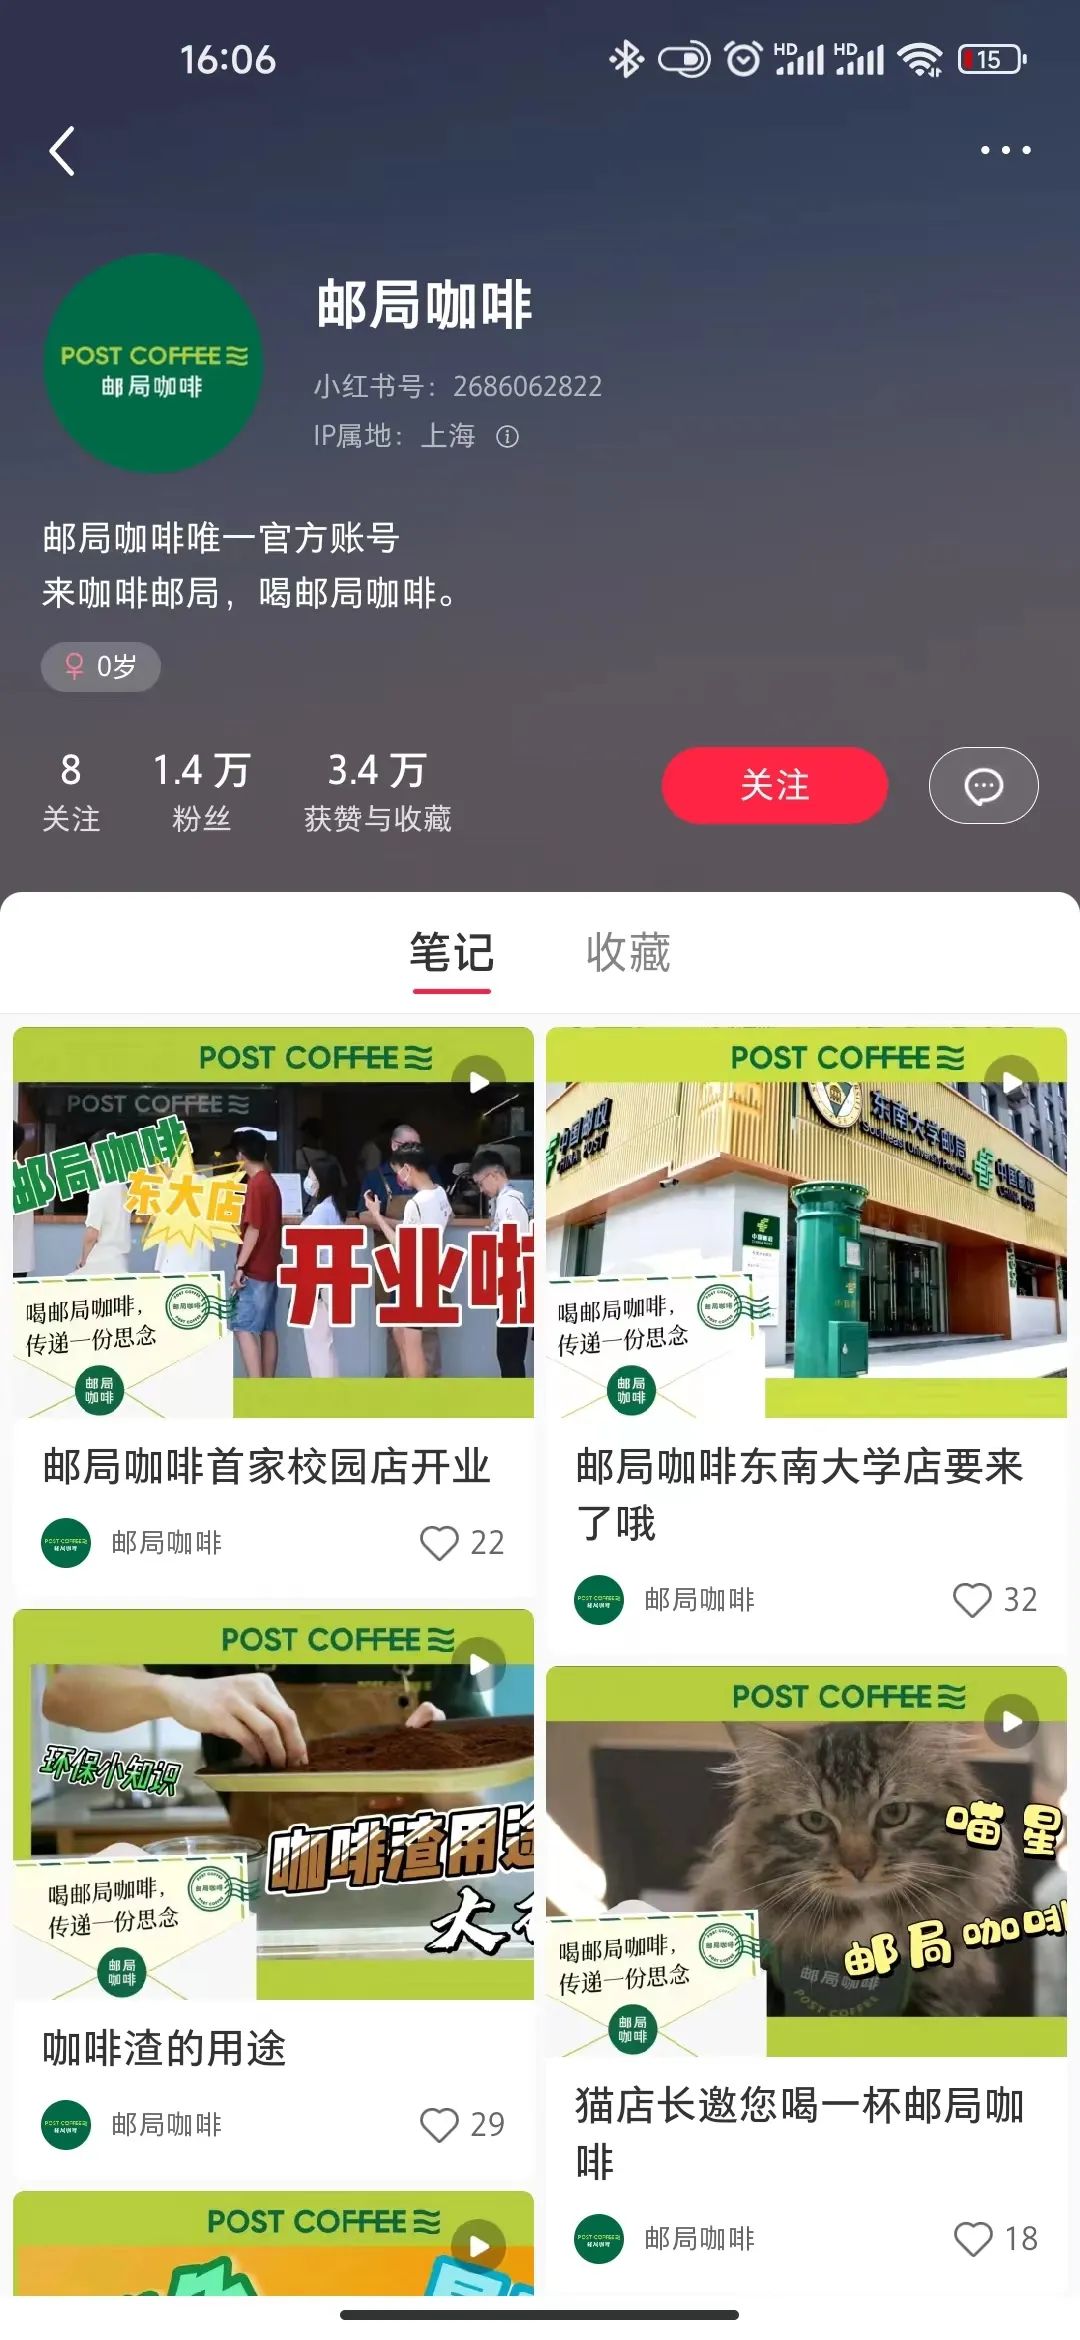 中国邮政“不务正业”？卖咖啡、直播带货、玩跨界能行吗？